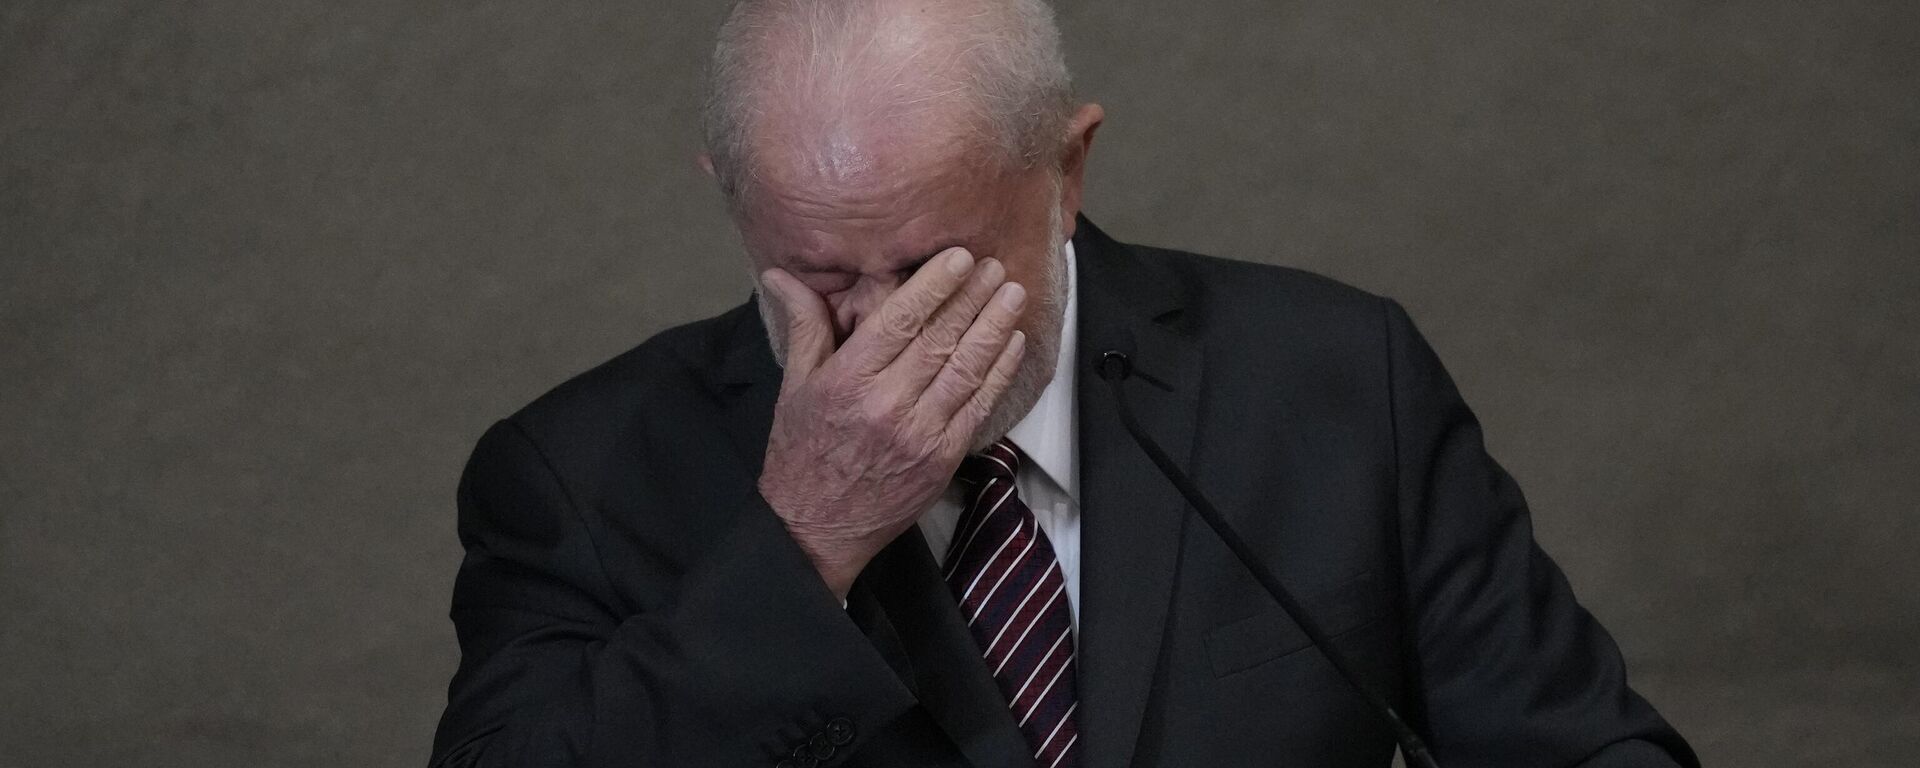 Lula da Silva'nın Brezilya devlet başkanlığı seçiminin galibi olduğu Yüksek Seçim Mahkemesi'nde düzenlenen törenle tescil edildi. Lula törende konuşurken ağladı.  - Sputnik Türkiye, 1920, 14.12.2022